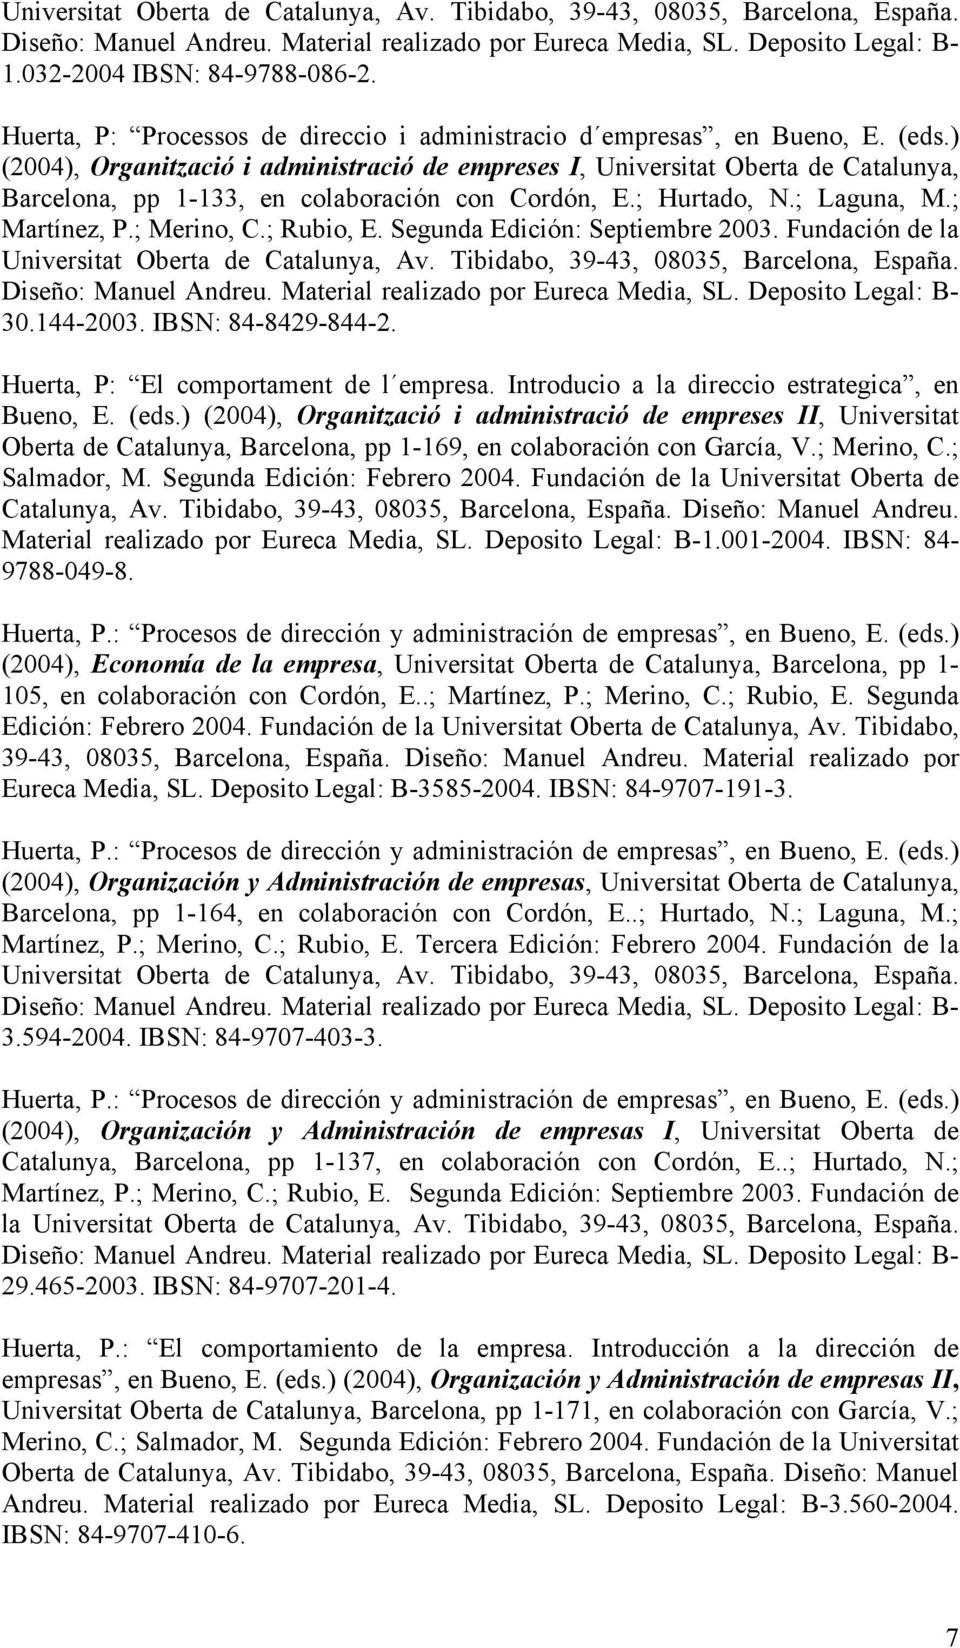 ) (2004), Organització i administració de empreses I, Universitat Oberta de Catalunya, Barcelona, pp 1-133, en colaboración con Cordón, E.; Hurtado, N.; Laguna, M.; Martínez, P.; Merino, C.; Rubio, E.